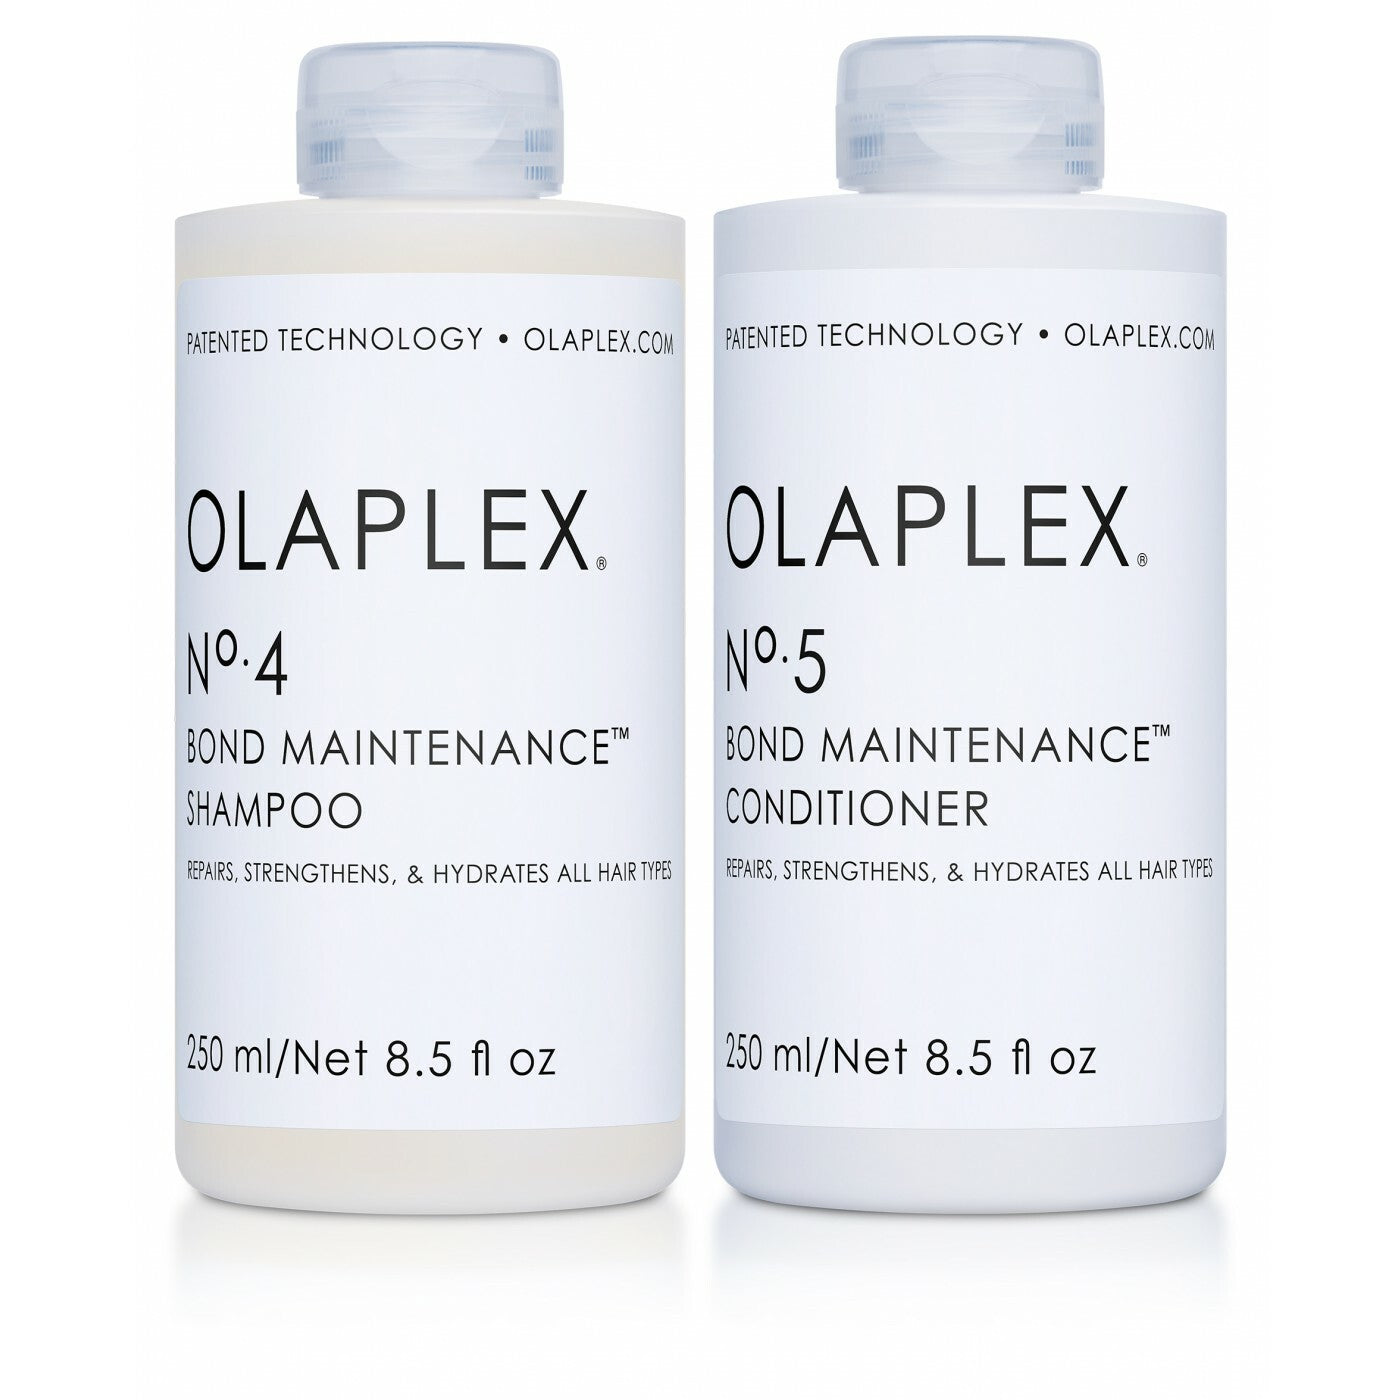 Olaplex Shampoo and Olaplex Conditioner